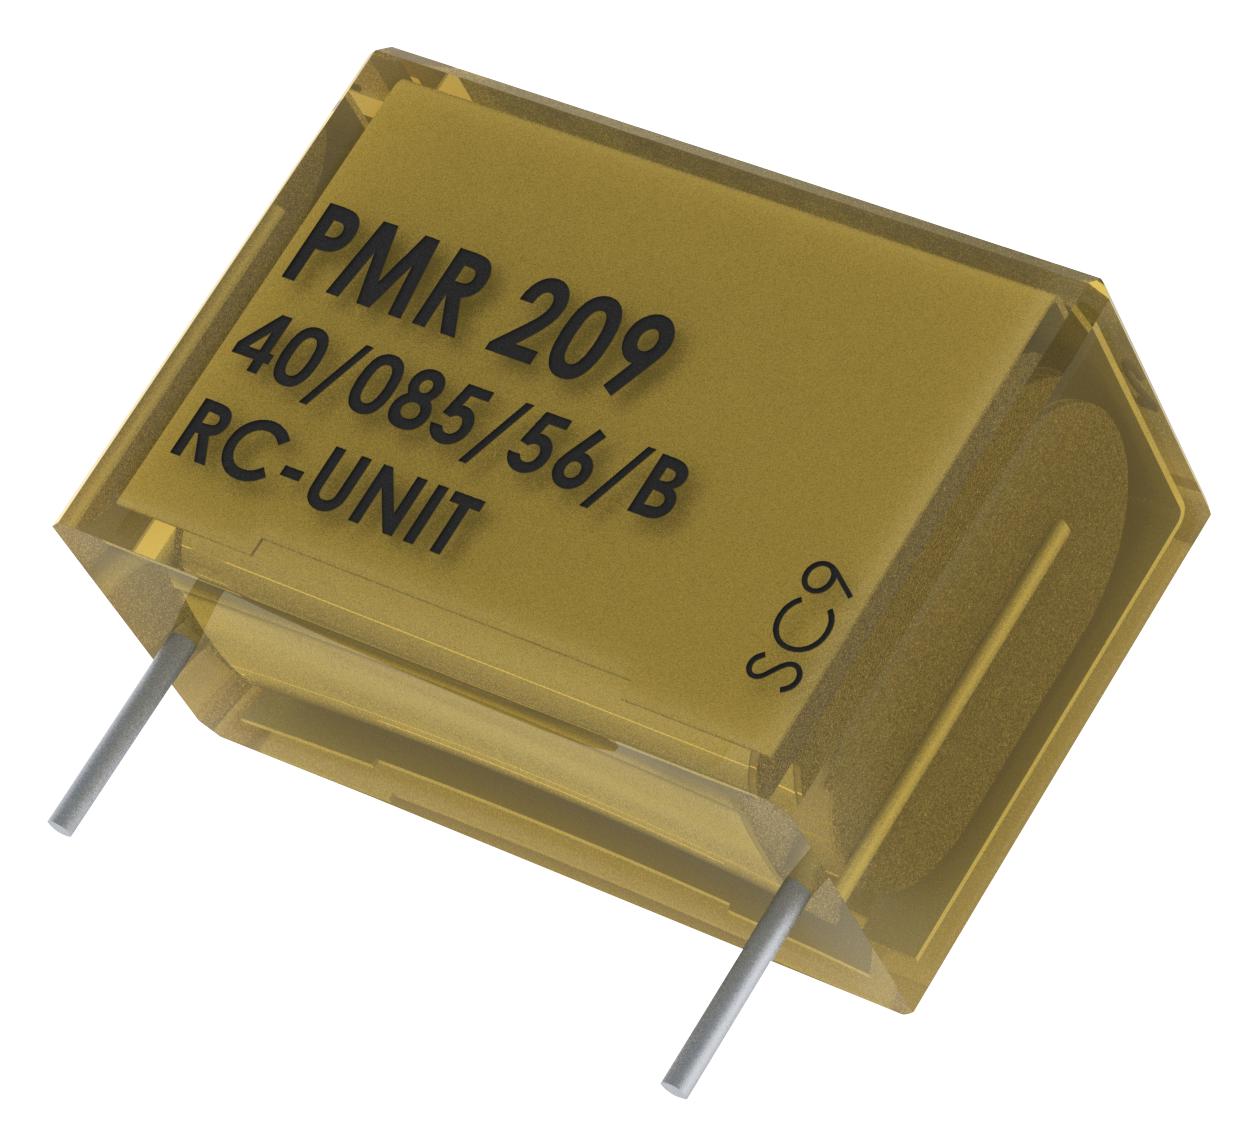 PMR209MC6220M100R30 CAP, 0.22µF, 20%, PAPER, RADIAL KEMET